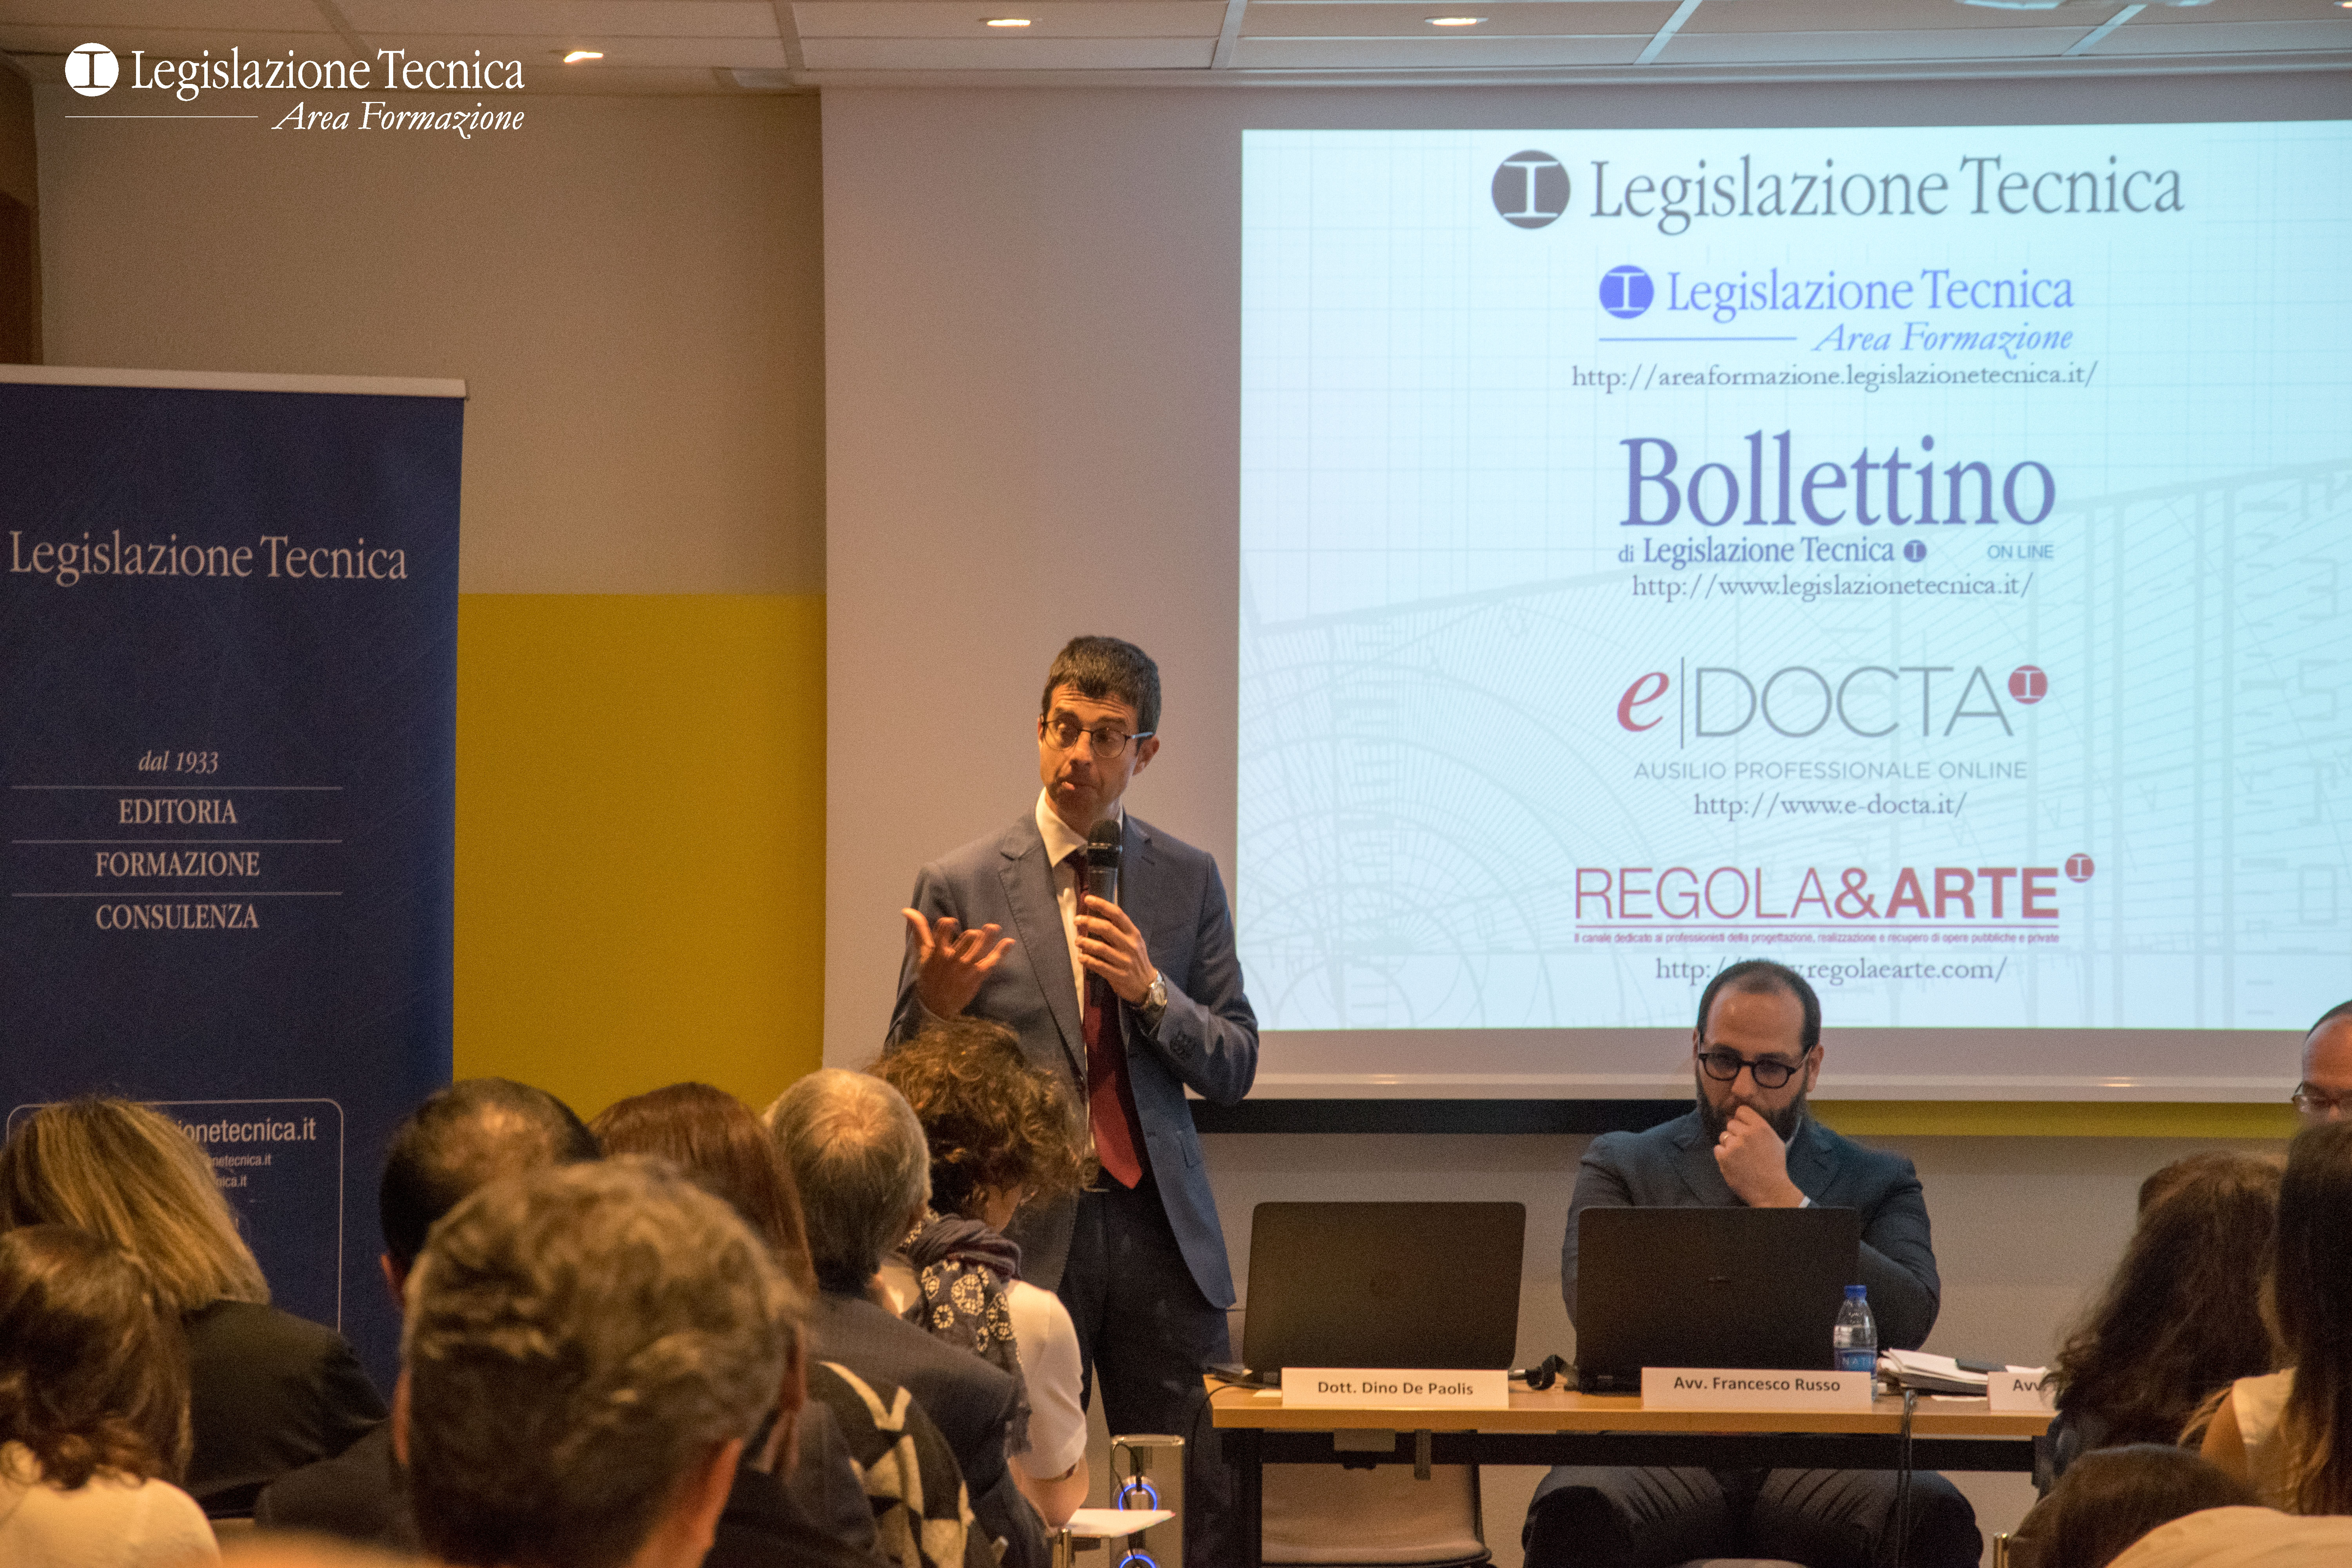 L'introduzione del Dott. Dino de Paolis, Direttore editoriale di Legislazione Tecnica